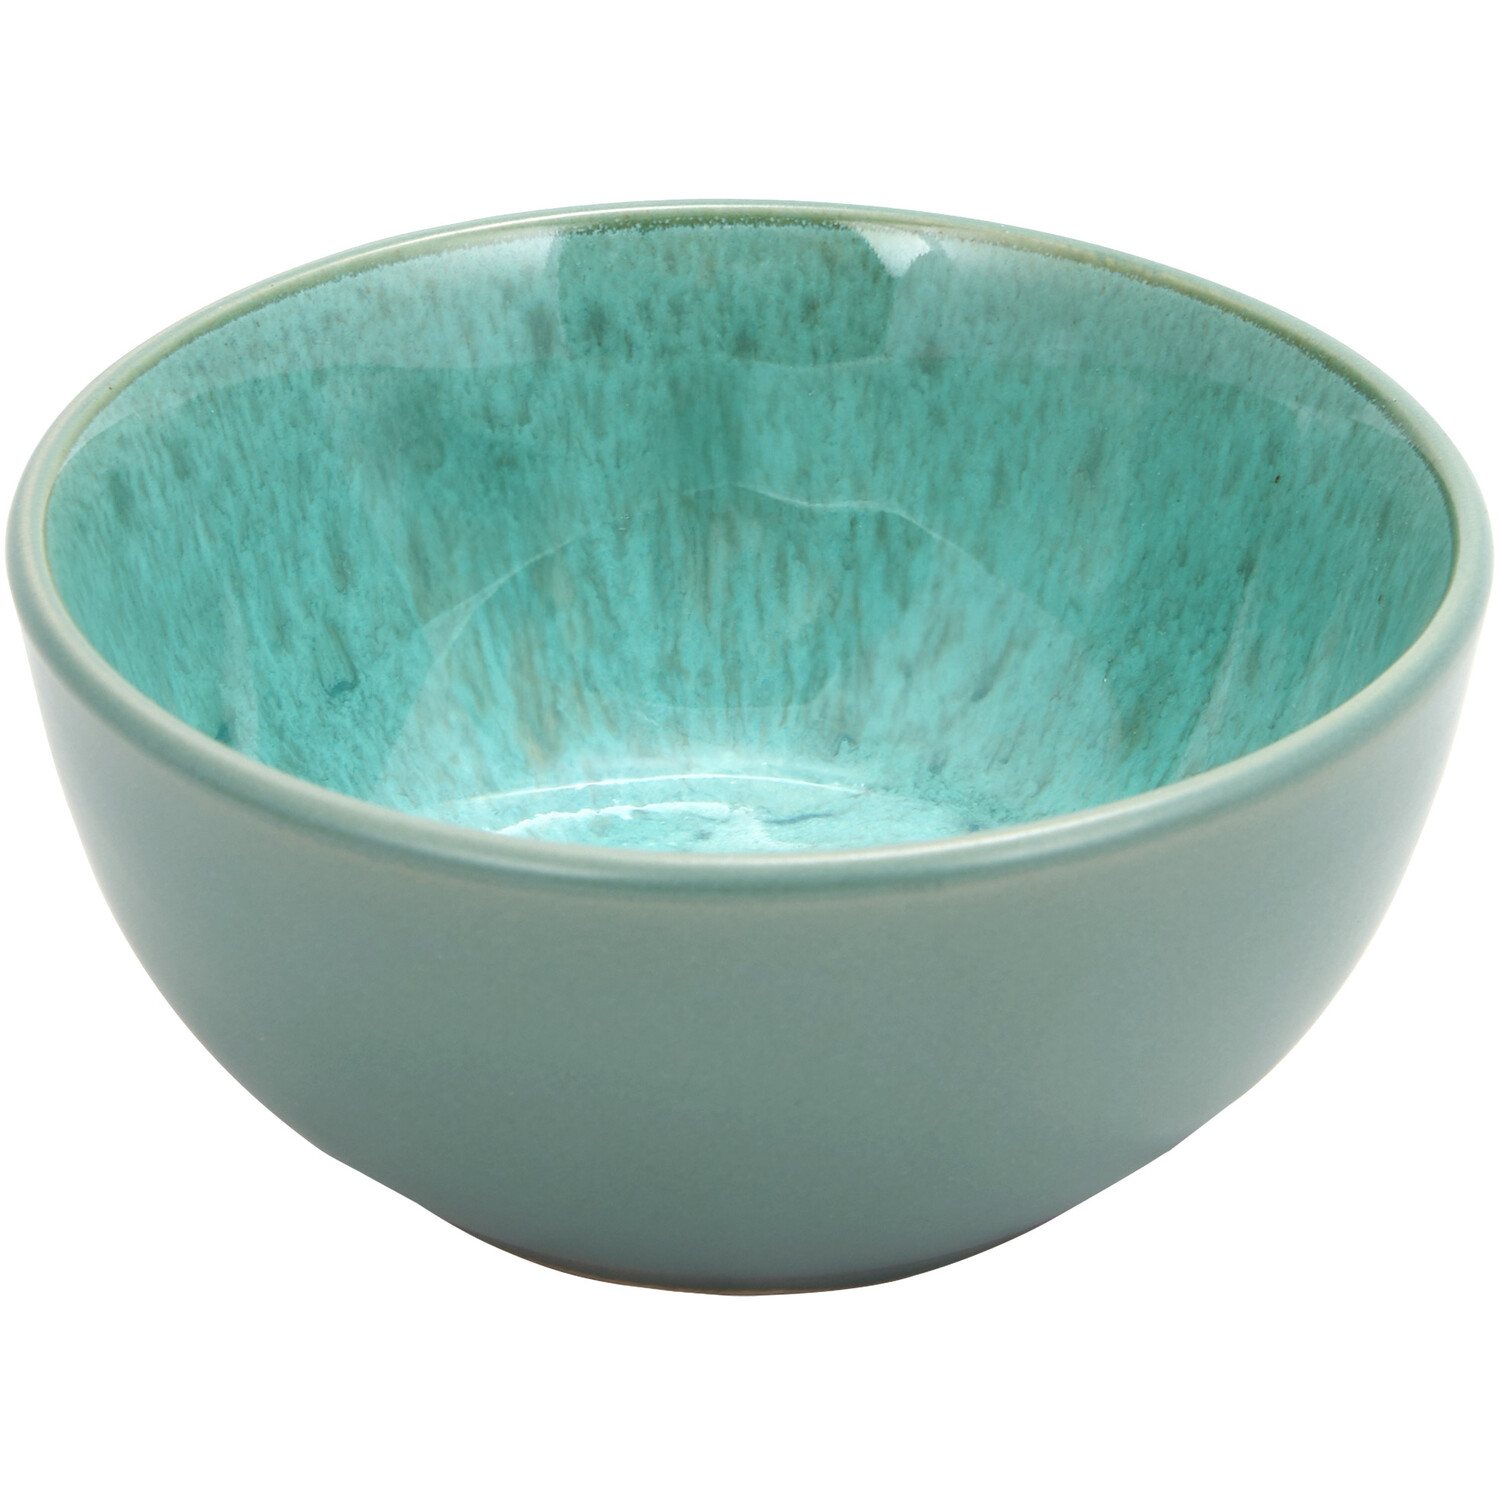 Salvie Reactive Glaze Nibbles Bowl - Sea Green Image 1